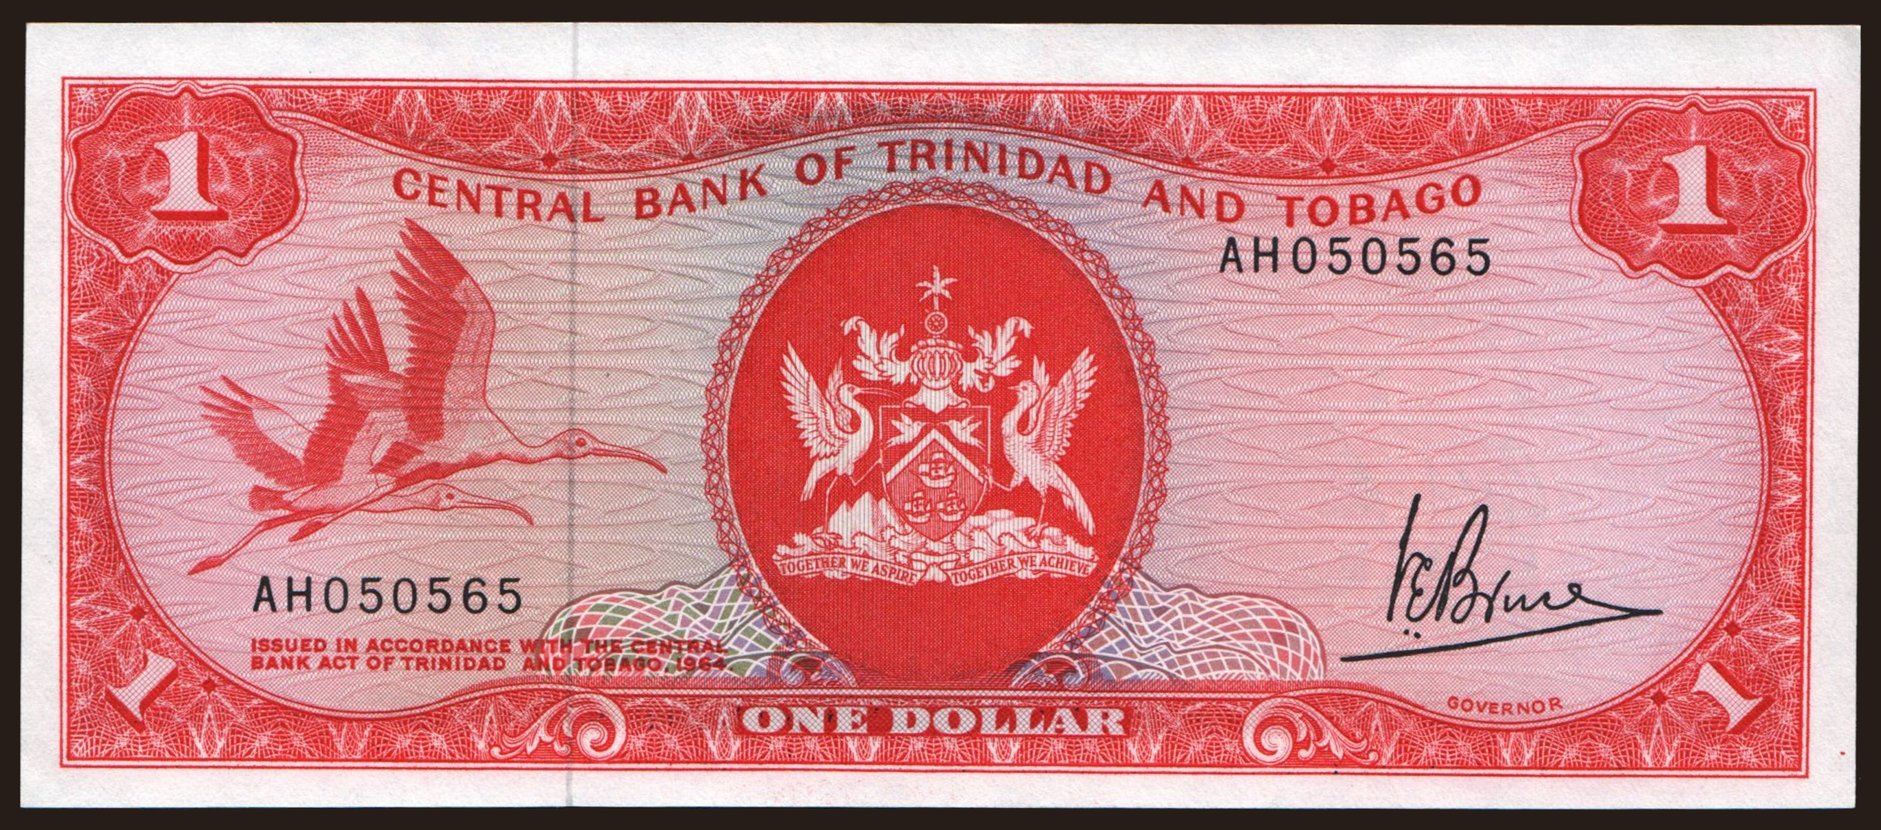 1 dollar, 1977